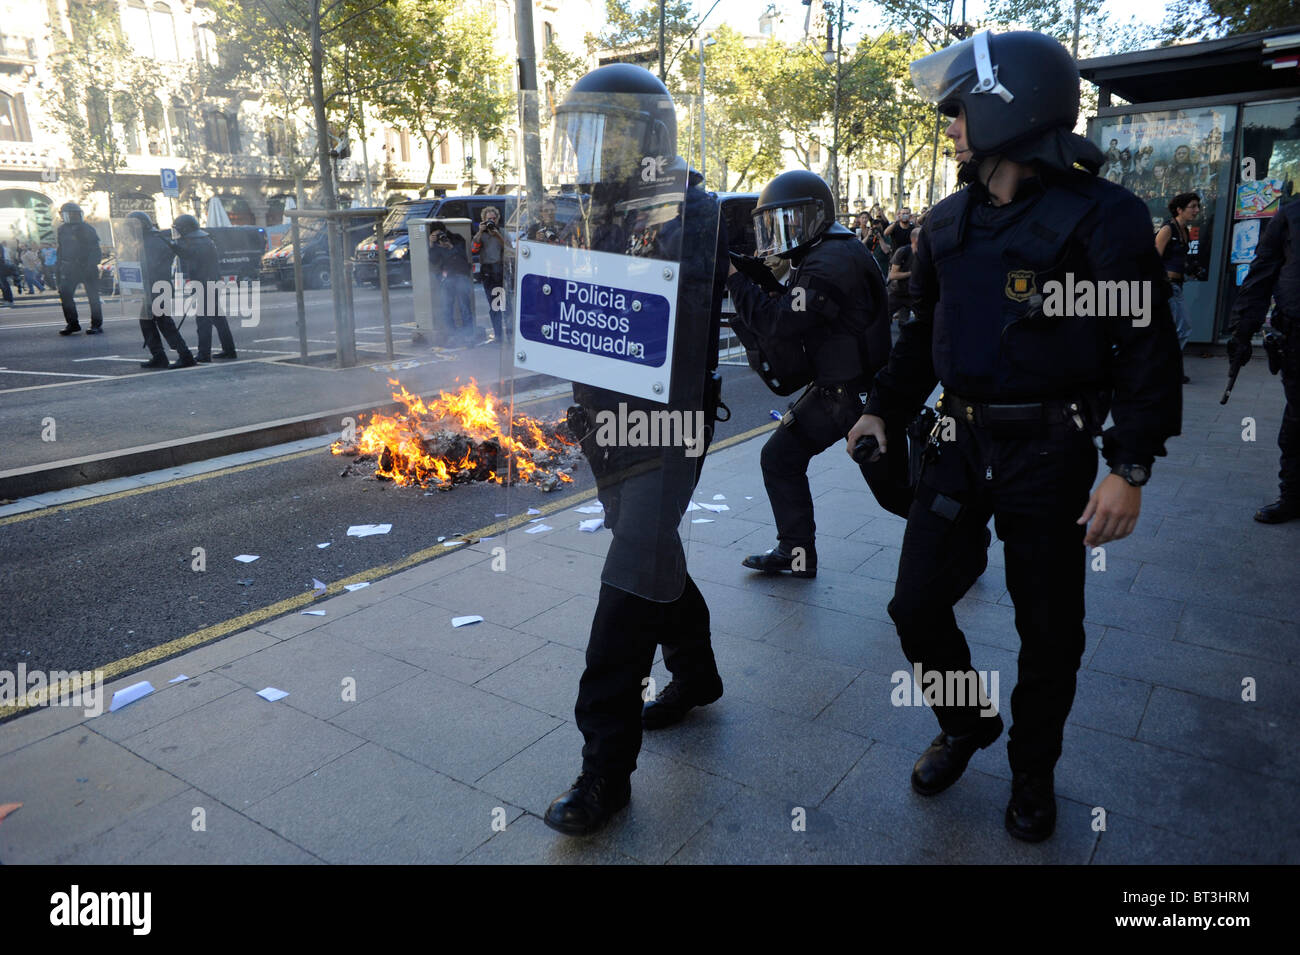 La policía antidisturbios en los enfrentamientos ocurridos en el centro de la ciudad de Barcelona durante la huelga general en España. Foto de stock